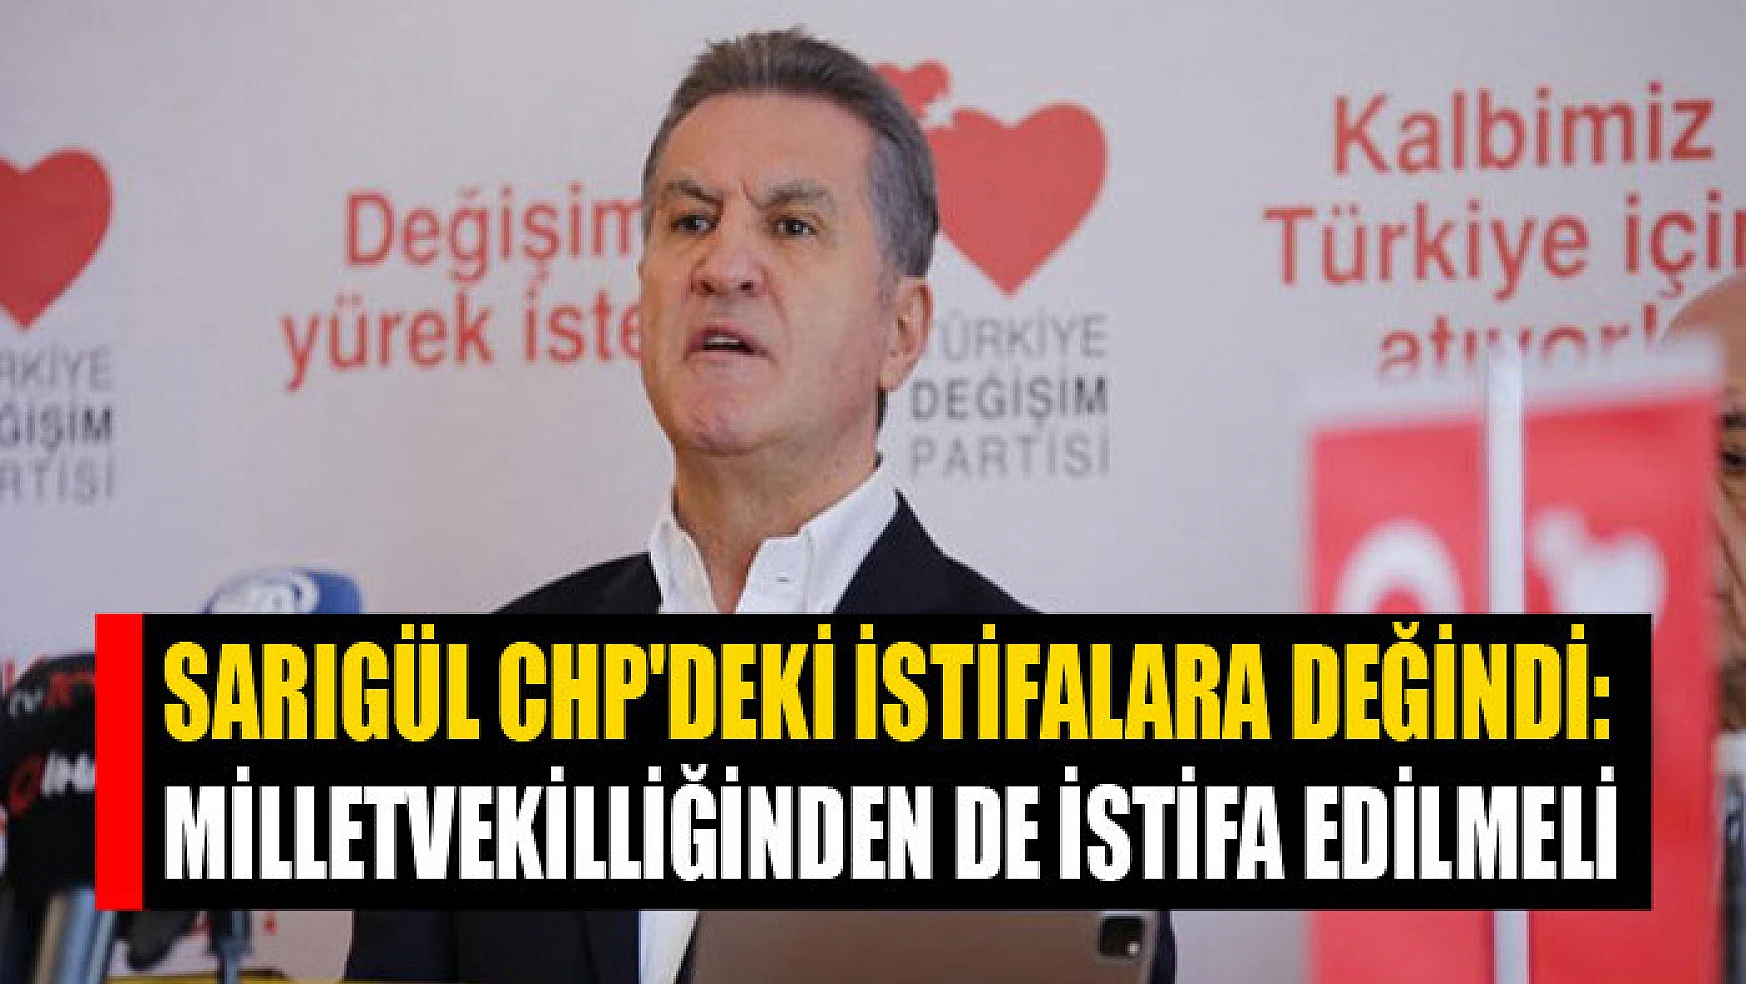 Sarıgül CHP'deki istifalara değindi: 'Milletvekilliğinden de istifa edilmeli'